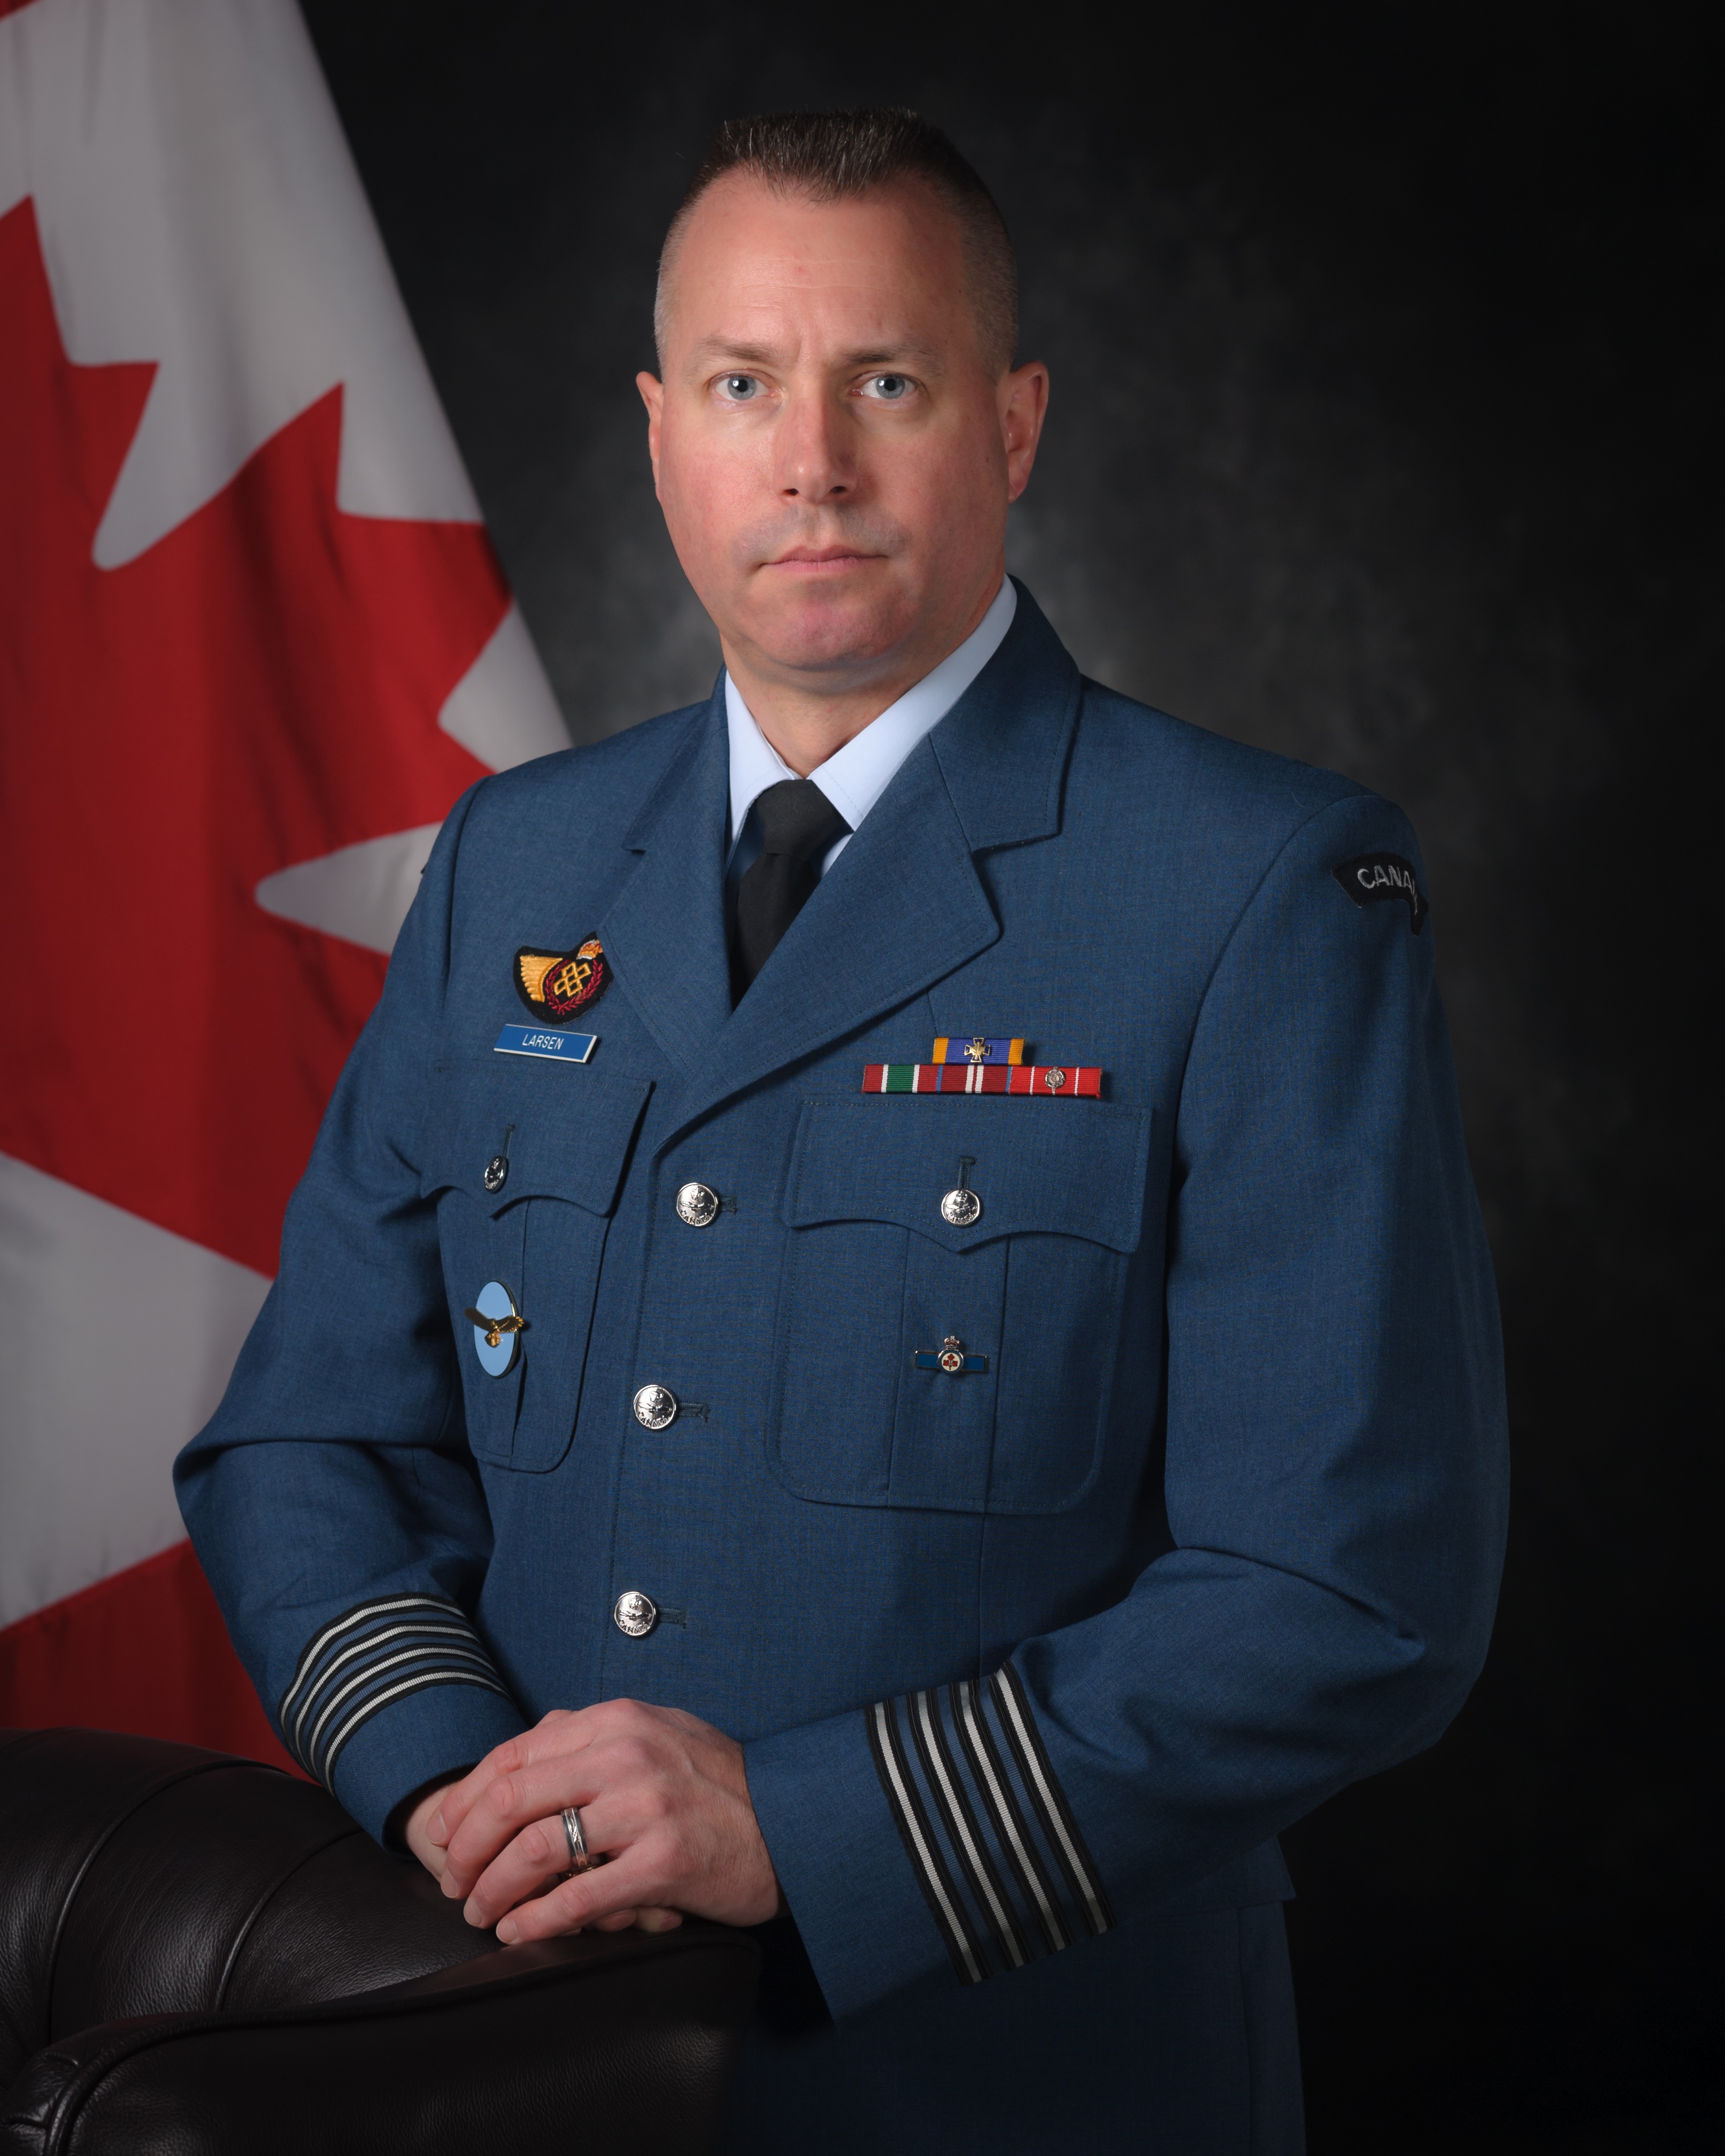 Colonel Mark Larse